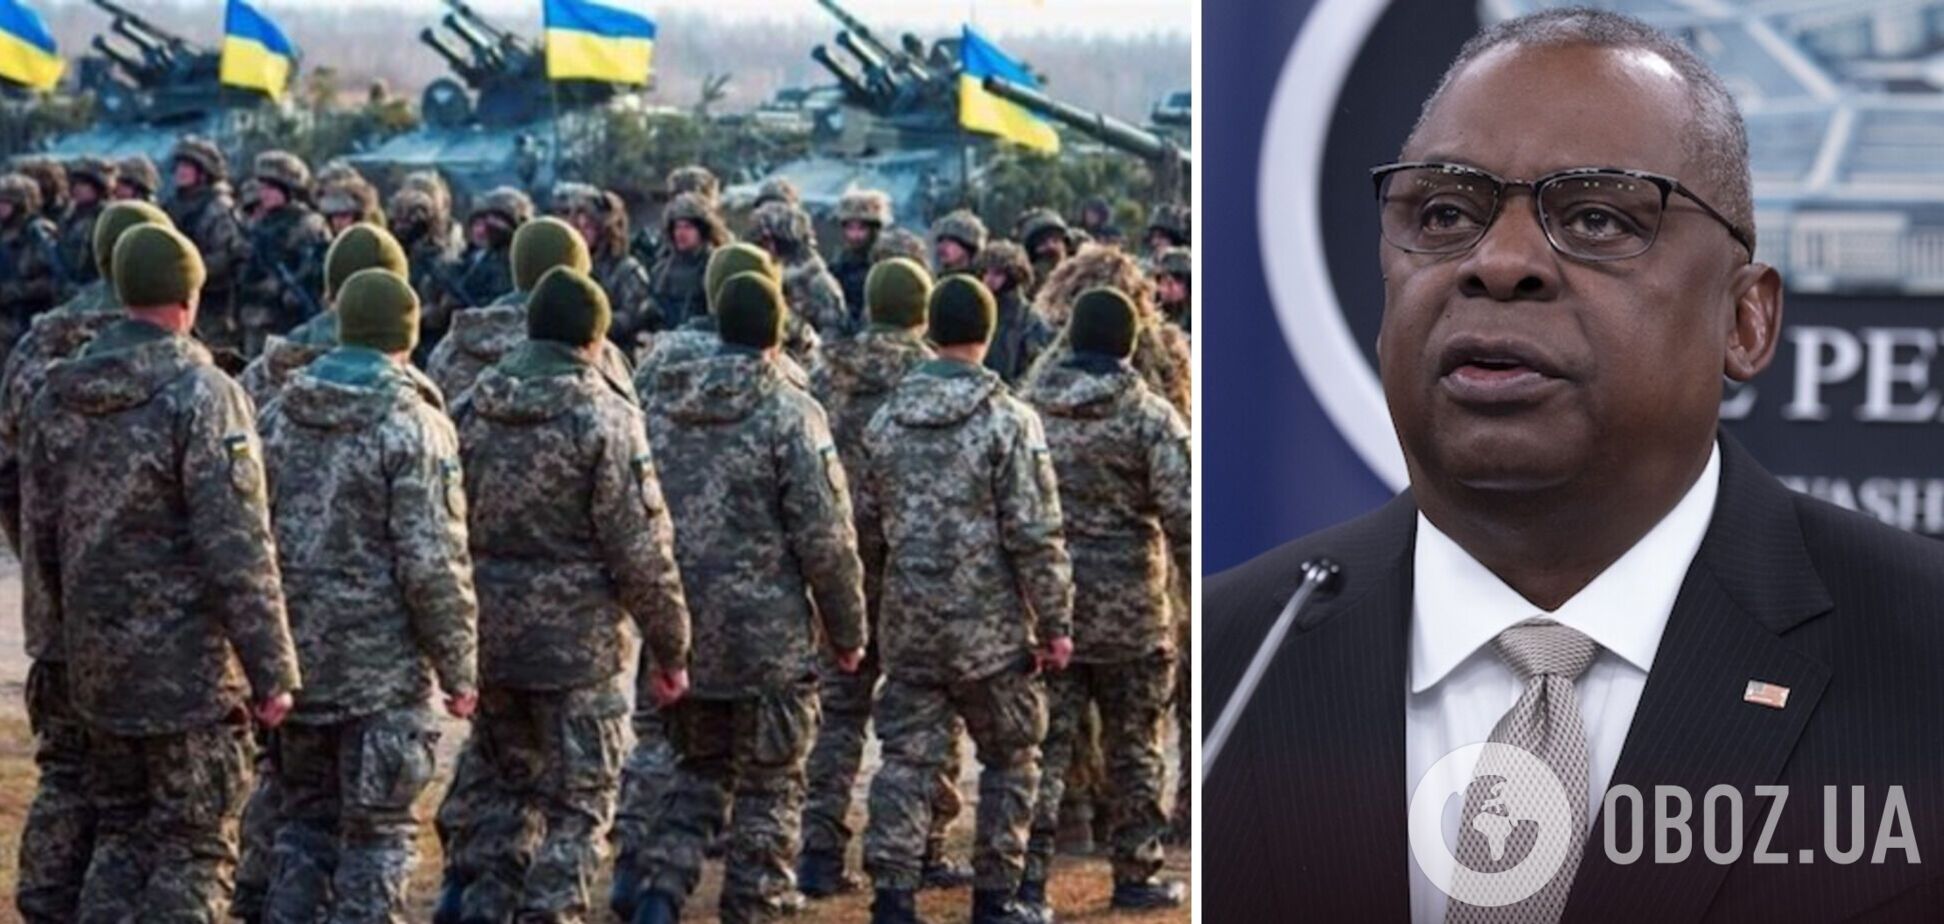 Глава Пентагона объявил о новой коалиции в поддержку Украины и пообещал усиление ПВО